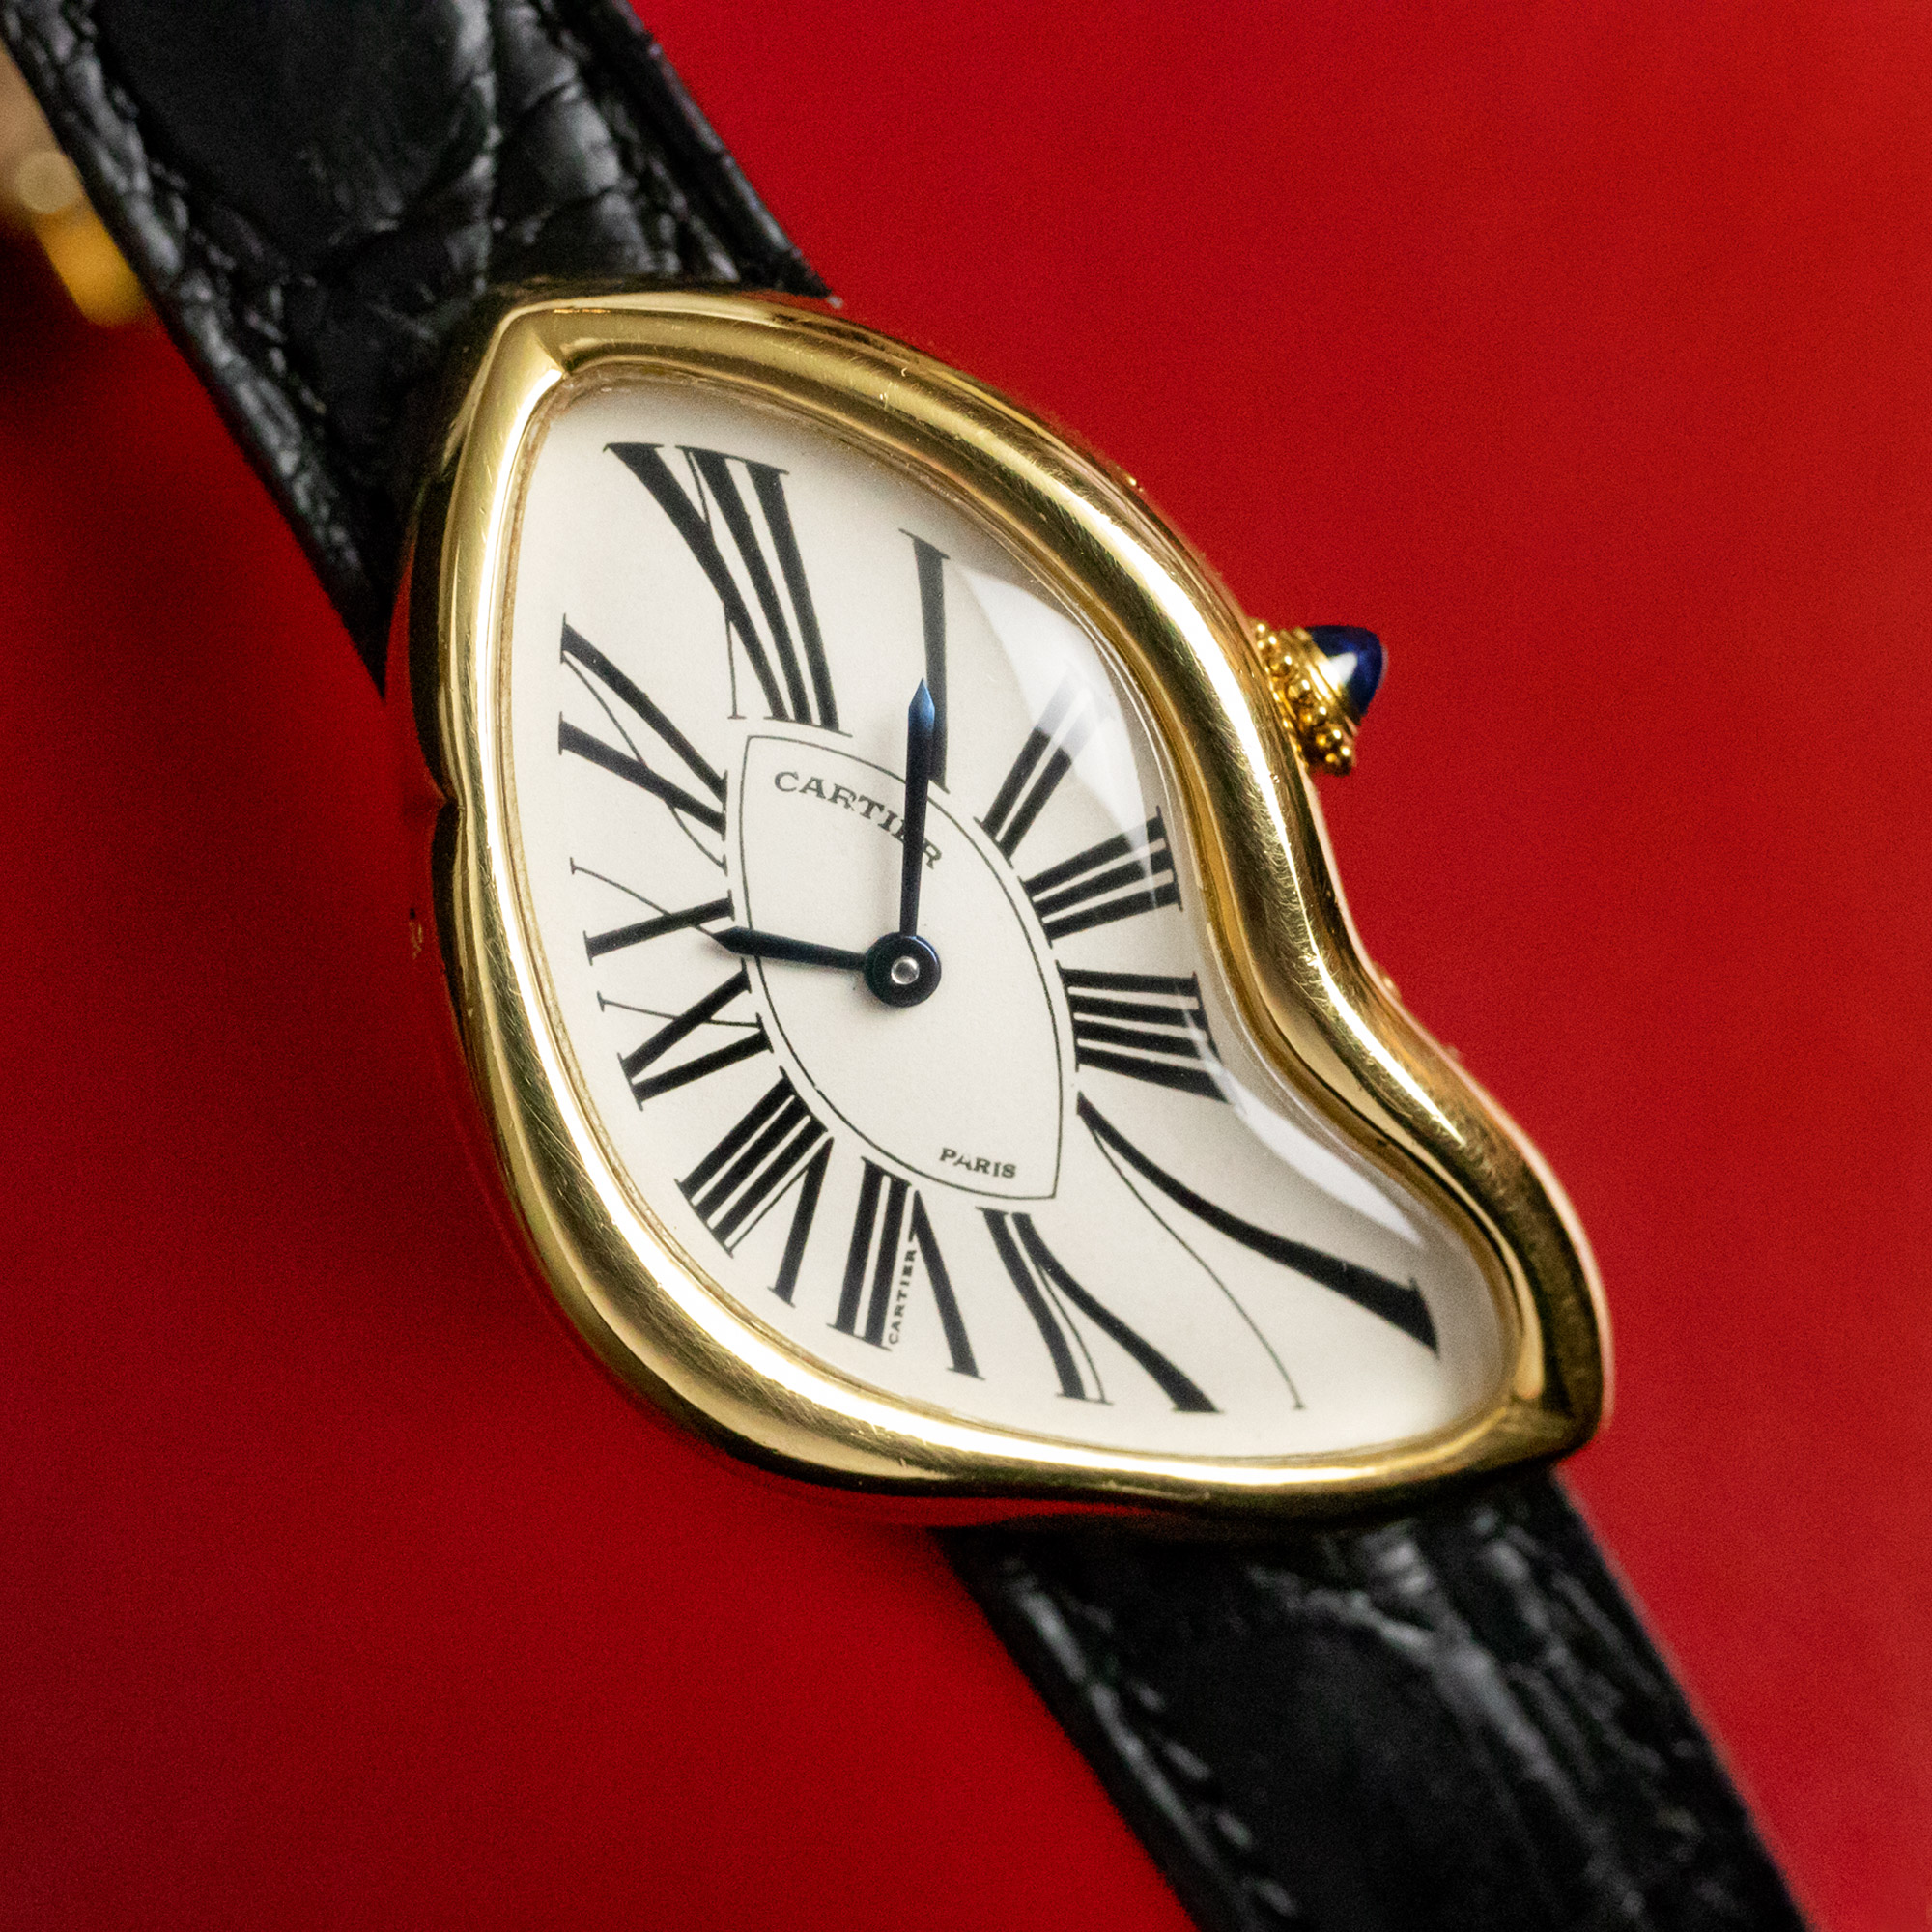 El reloj surrealista Cartier Crash rompió récord mundial vendiéndose en $1,5 millones de dólares